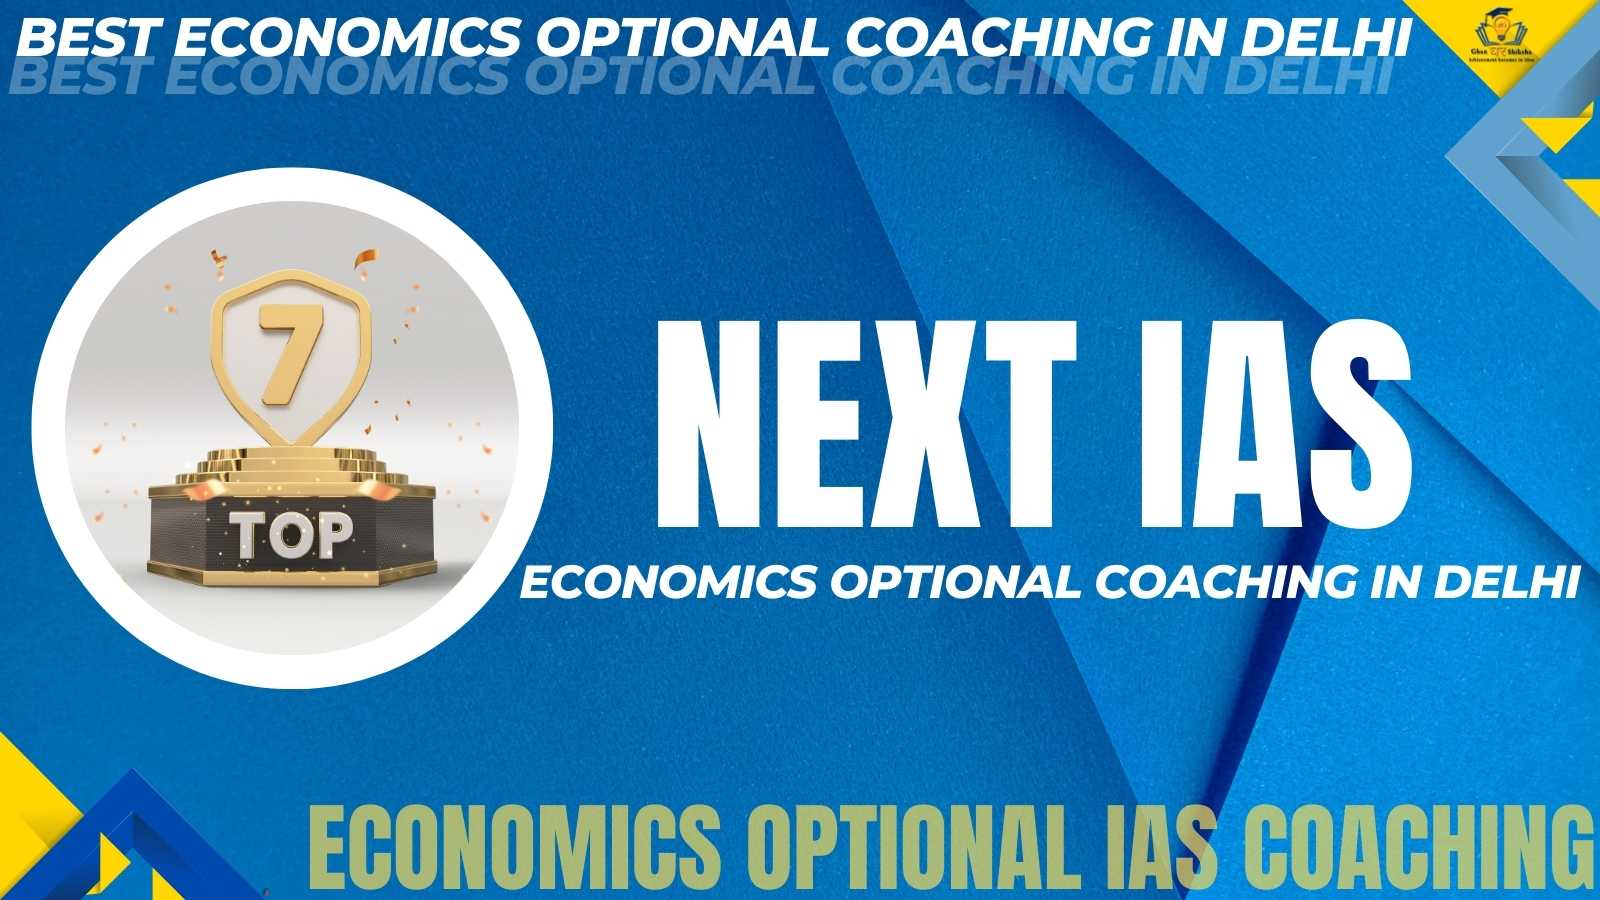 Best Economics Optional Coaching Institute In Delhi